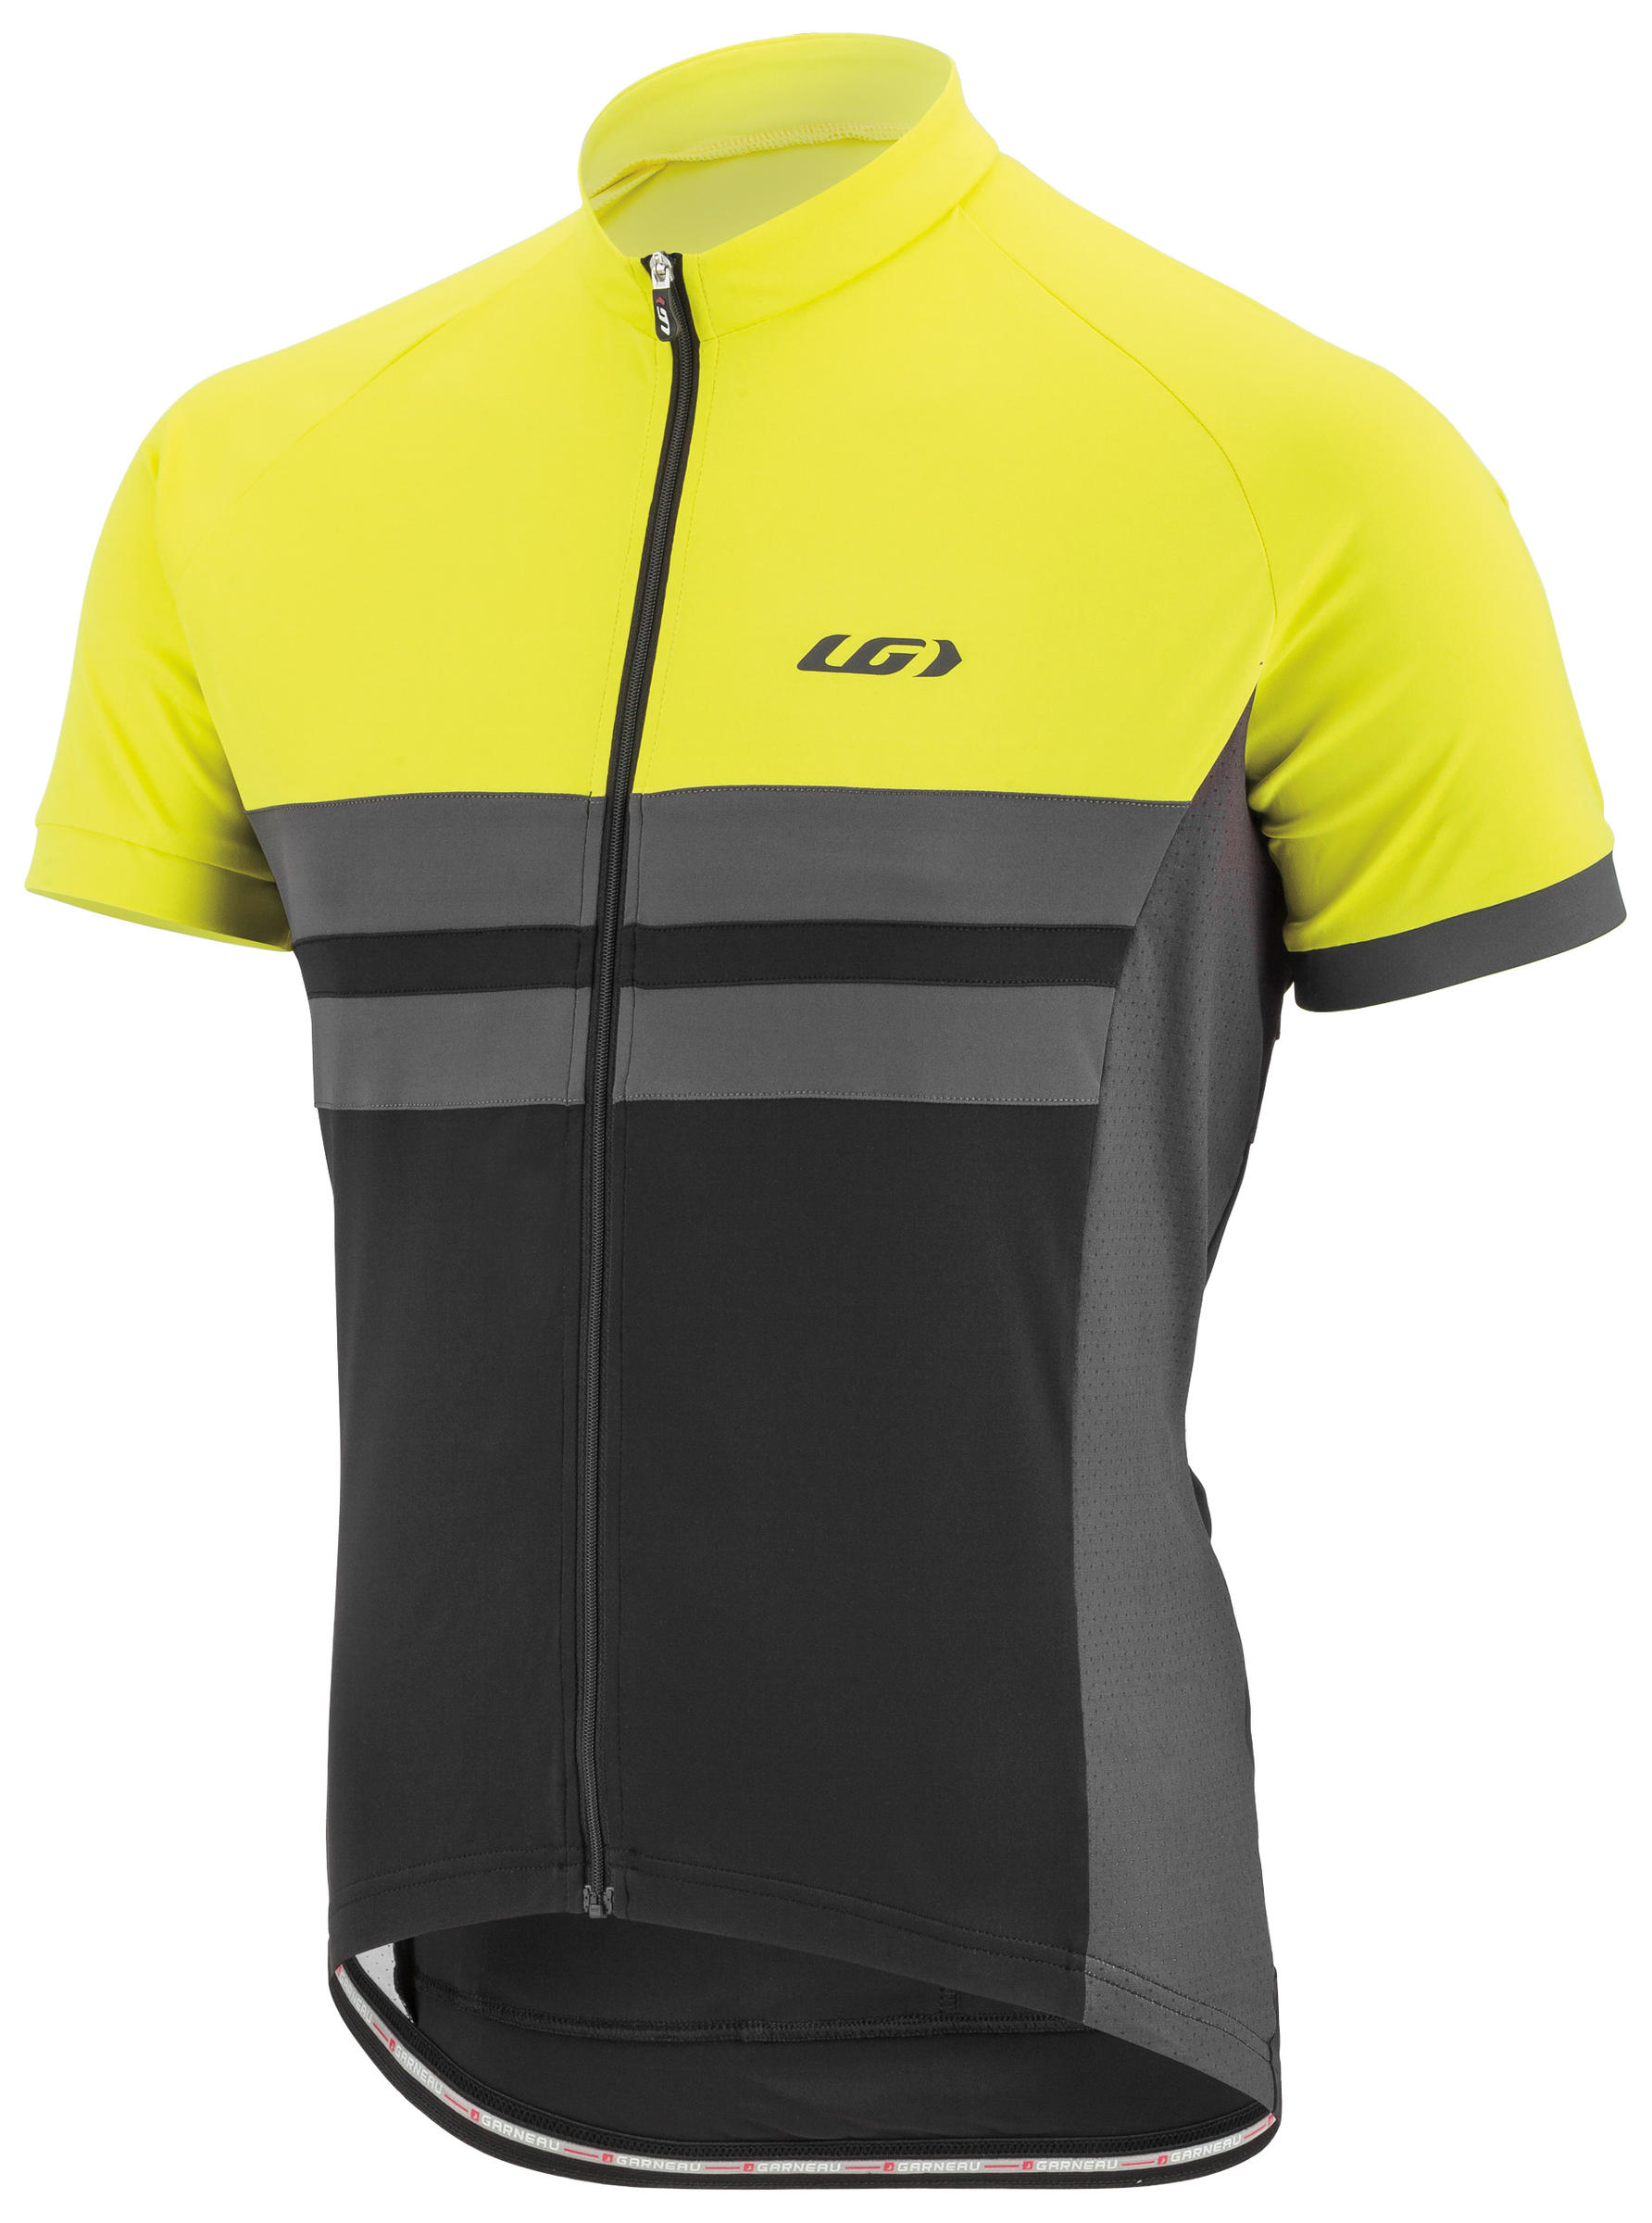 Louis Garneau Men's Cycling Jersey: Long/Short Sleeve Bike/Bicycle